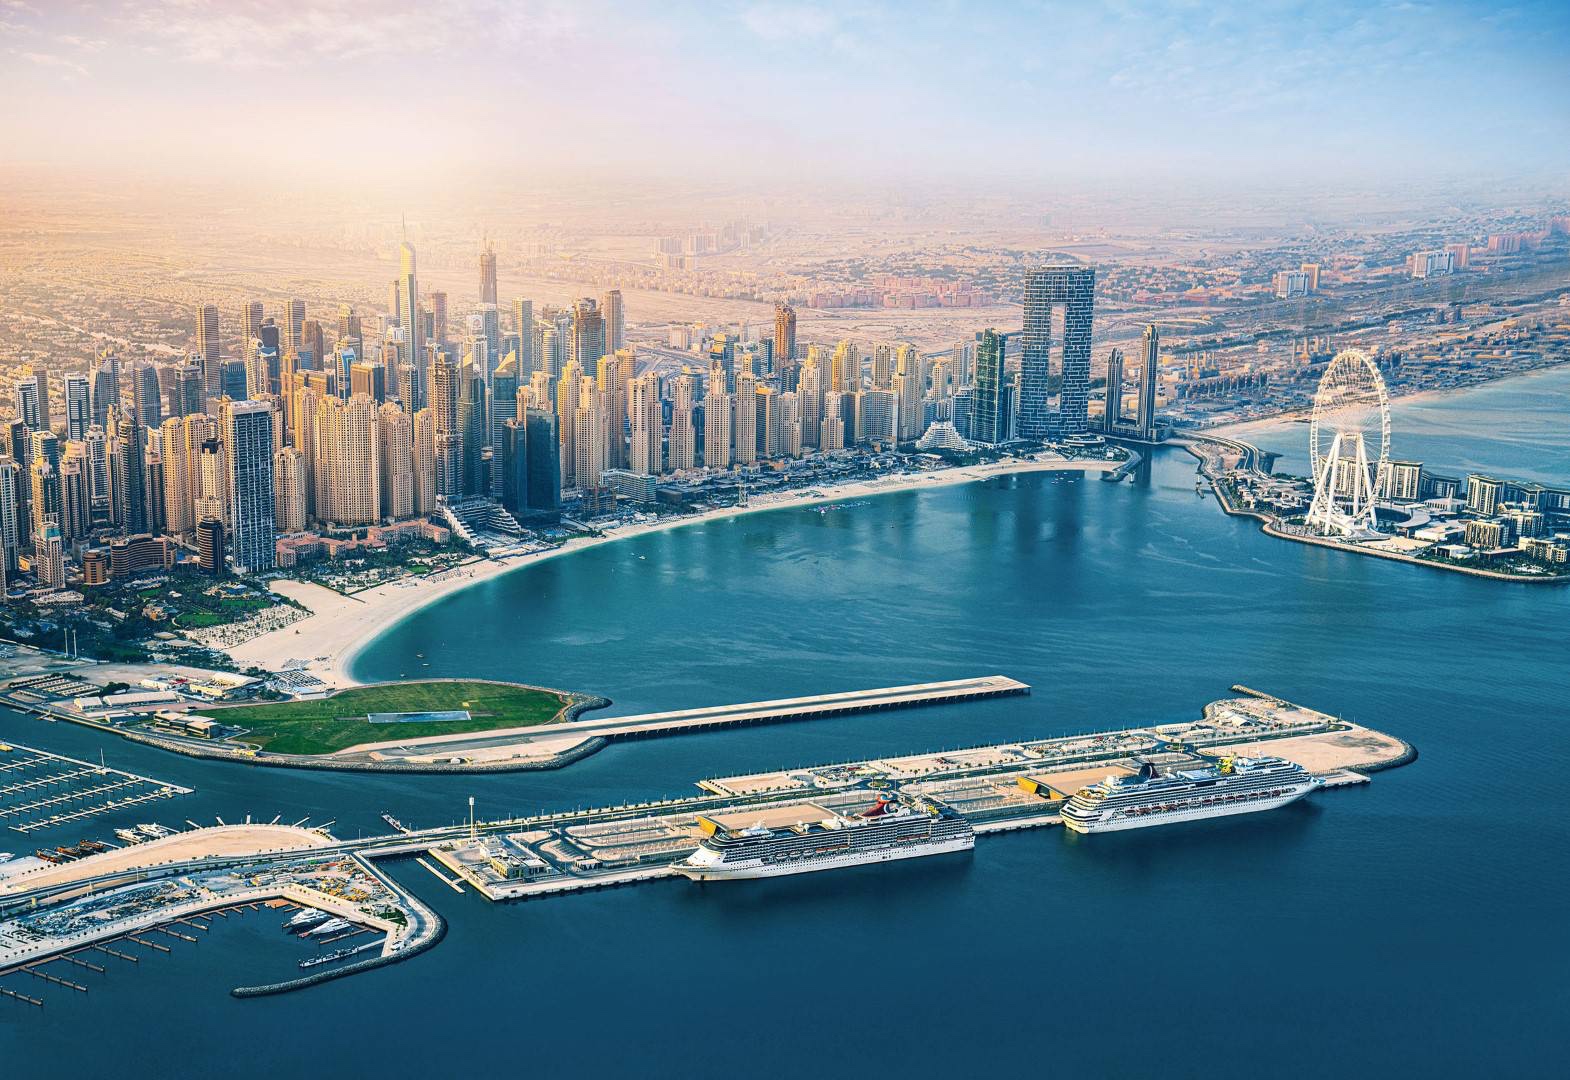 دبي Dubai تعزز مكانتها العالمية كوجهة رائدة في سياحة اليخوت